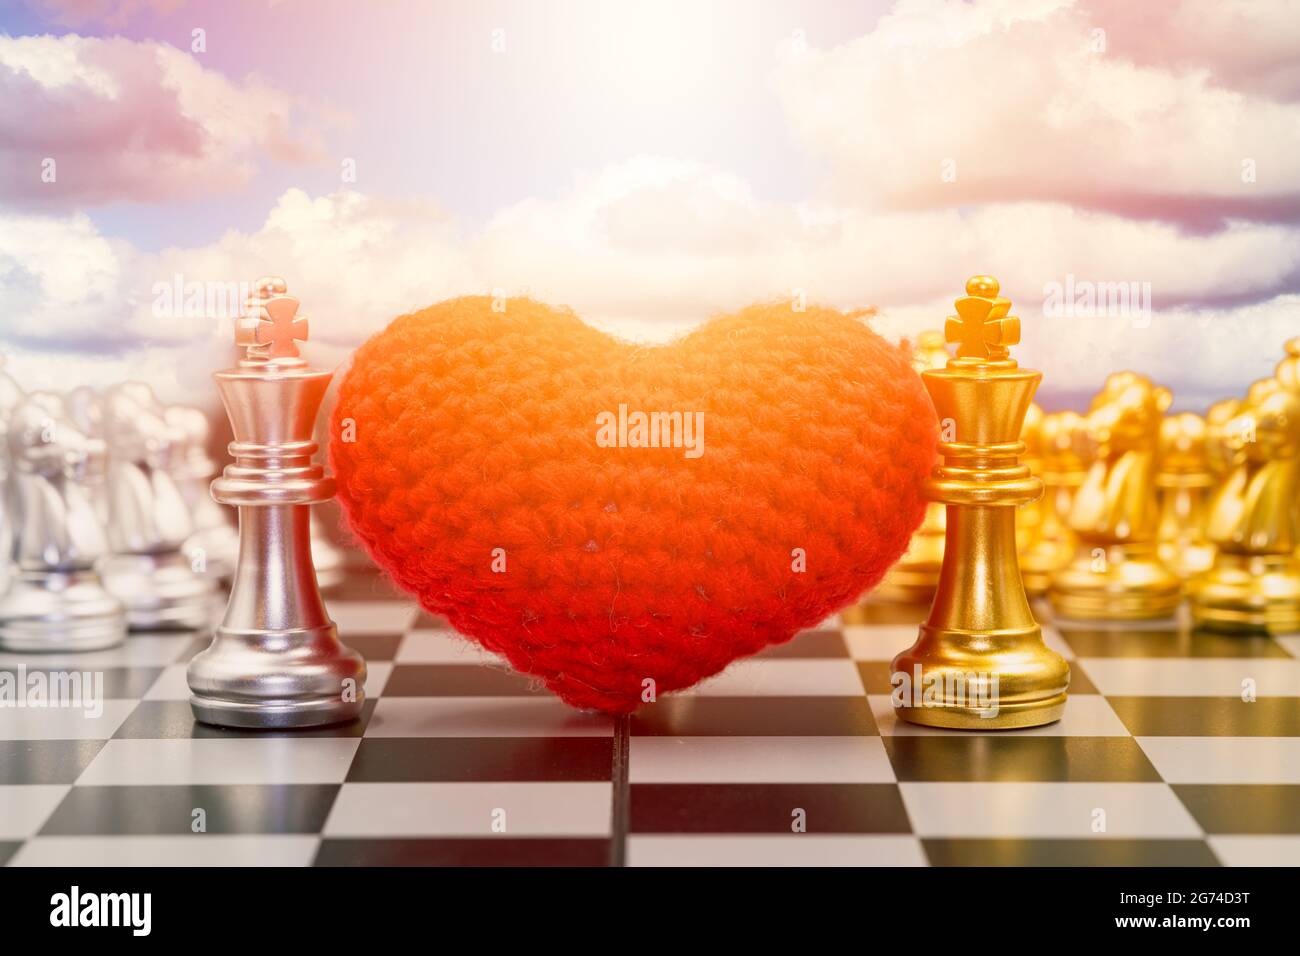 Schachspiel mit Herz für das Spielen von Einheitsspiel mit Liebe zusammen kein Kampf Konzept. Stockfoto